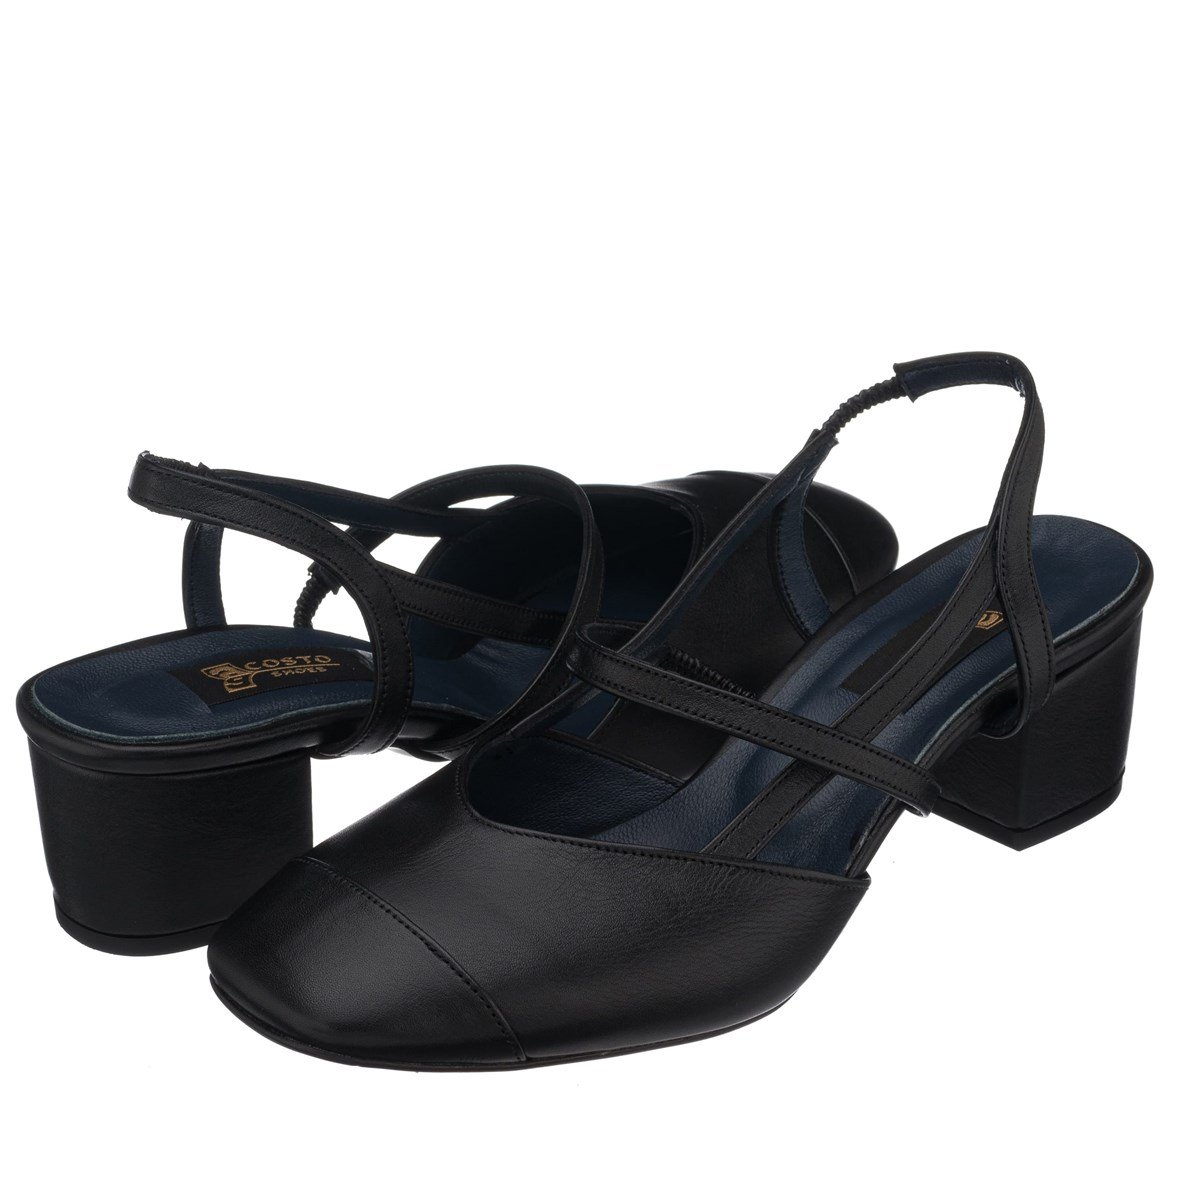 LTF00141 Siyah Kısa Topuk terlik sandalet jurdan rahat geniş kalıp özel  seri büyük numara topuklu ayakkabı